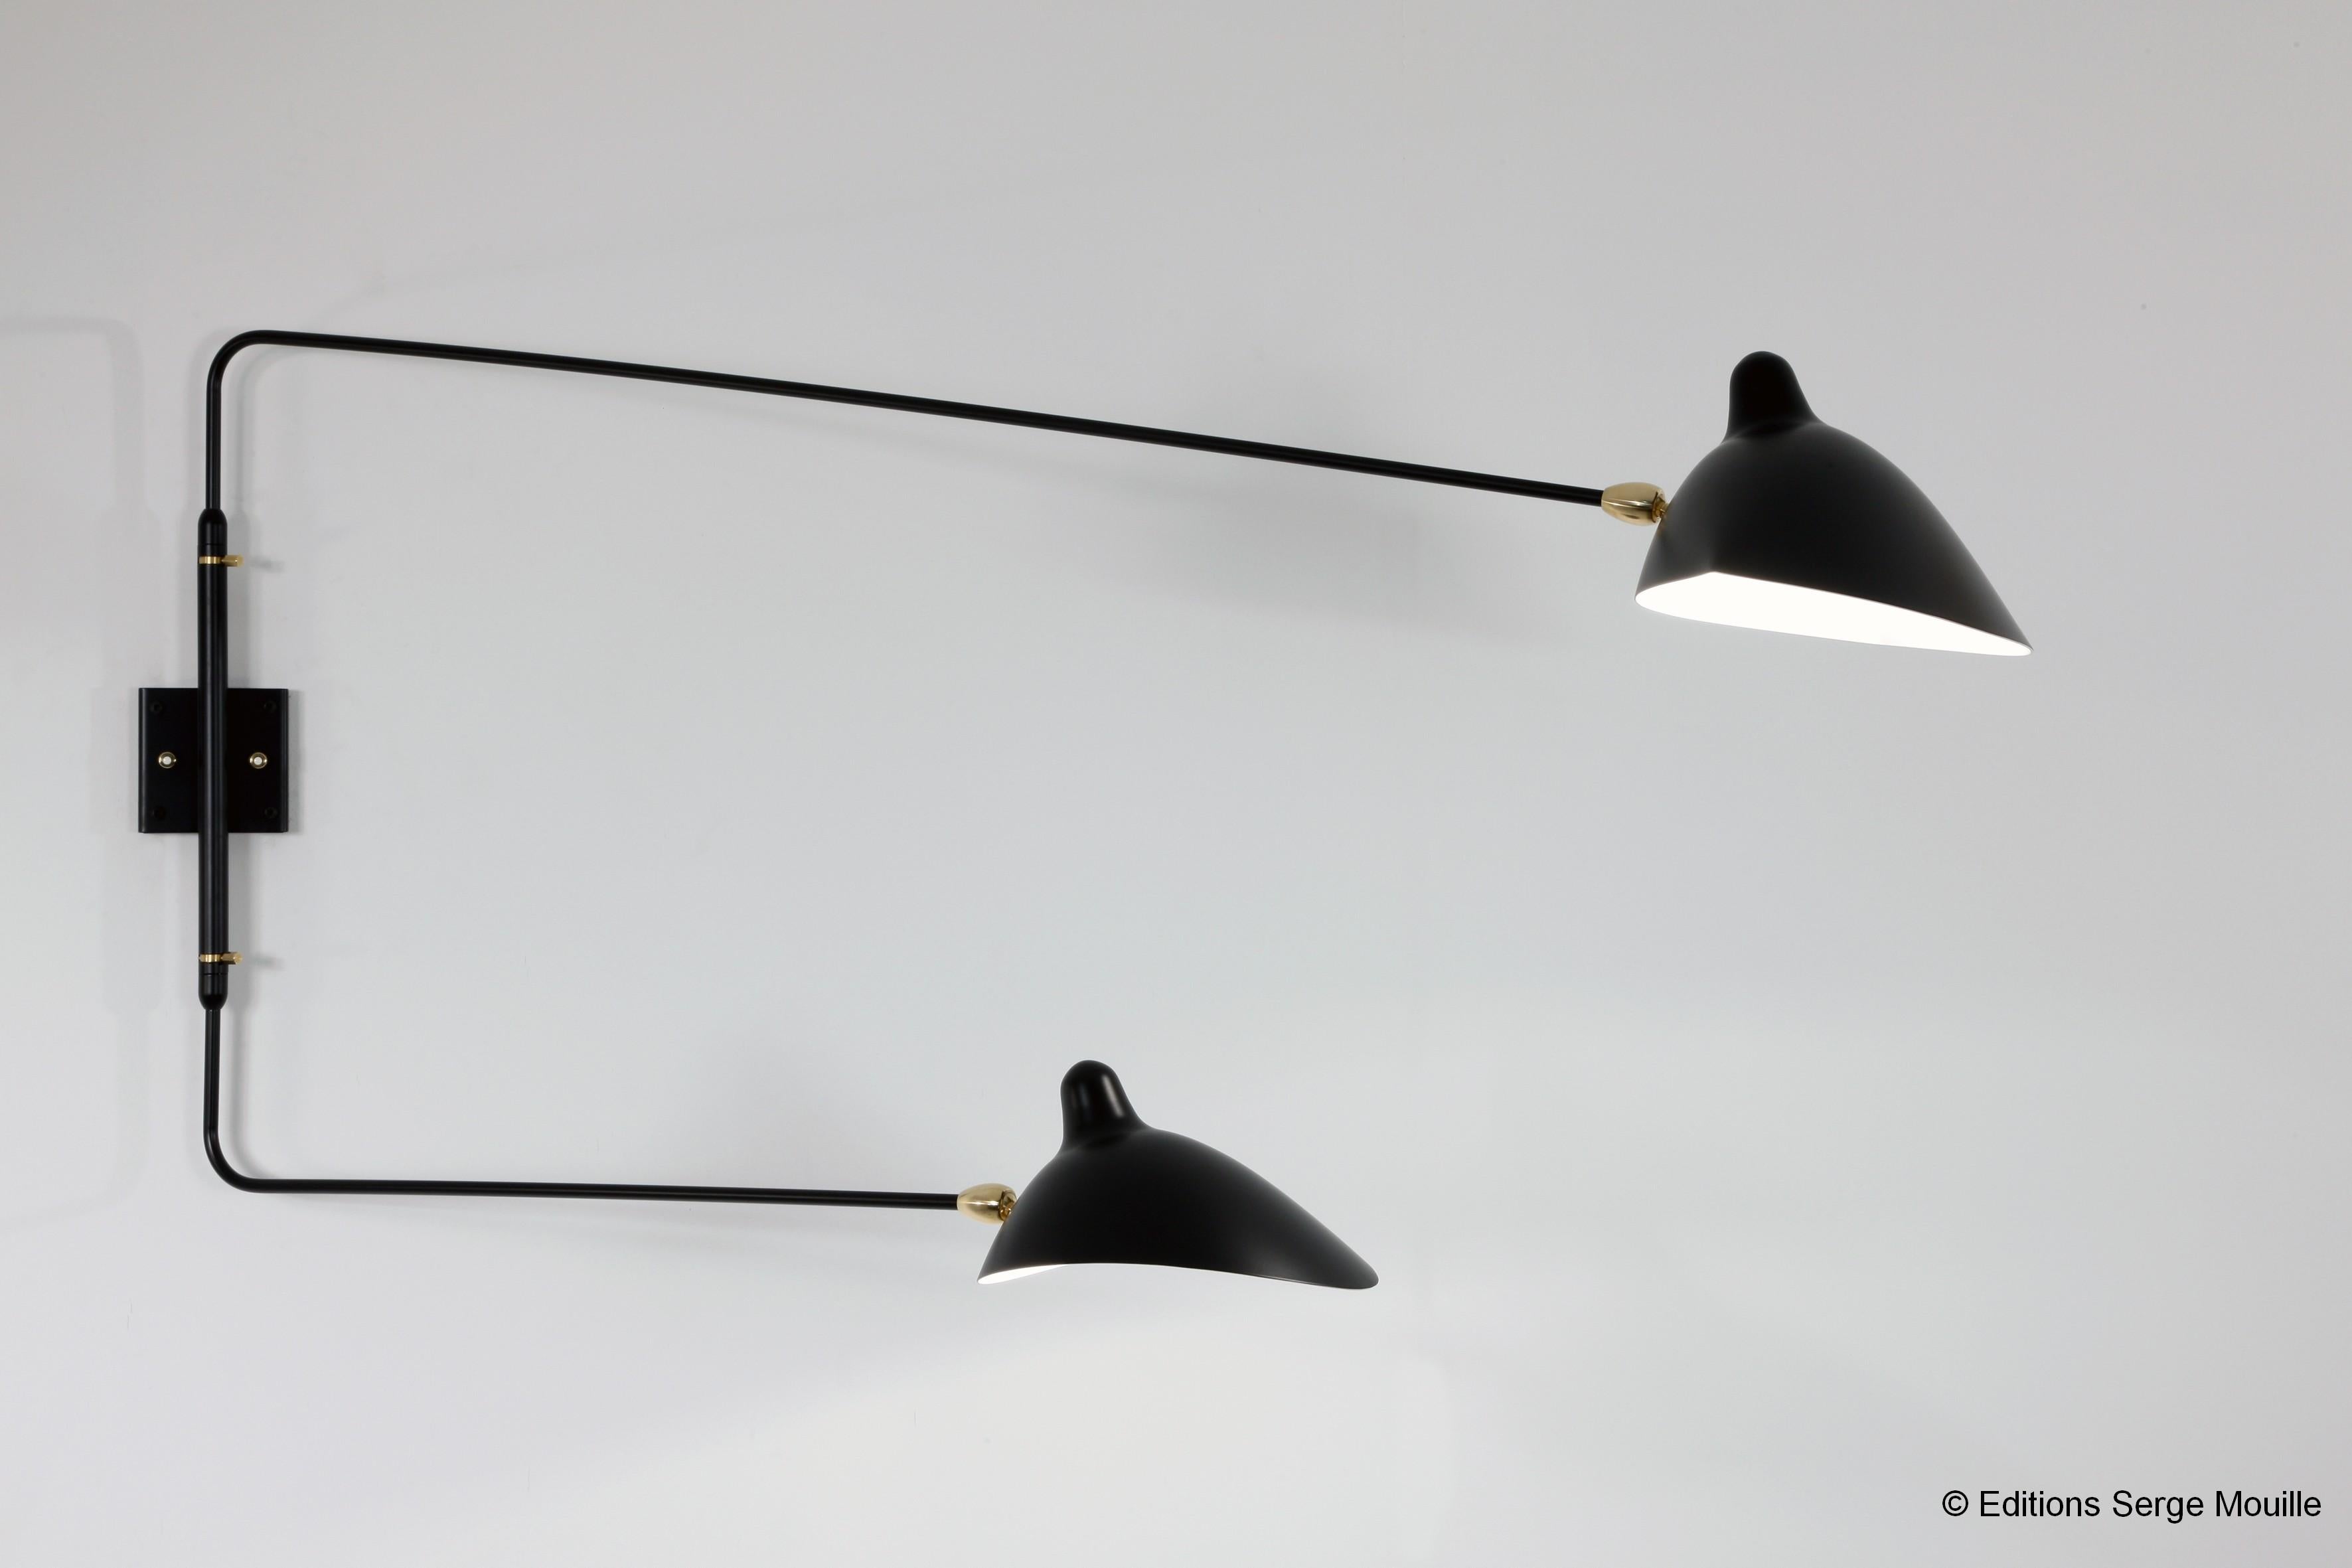 Serge Mouille 'Applique Deux Bras Droits Pivotants' Wandleuchte in schwarz.

Diese ikonische Wandleuchte wurde 1954 entworfen und wird auch heute noch von der Edition Serge Mouille in Frankreich hergestellt. Dabei werden viele der handwerklichen